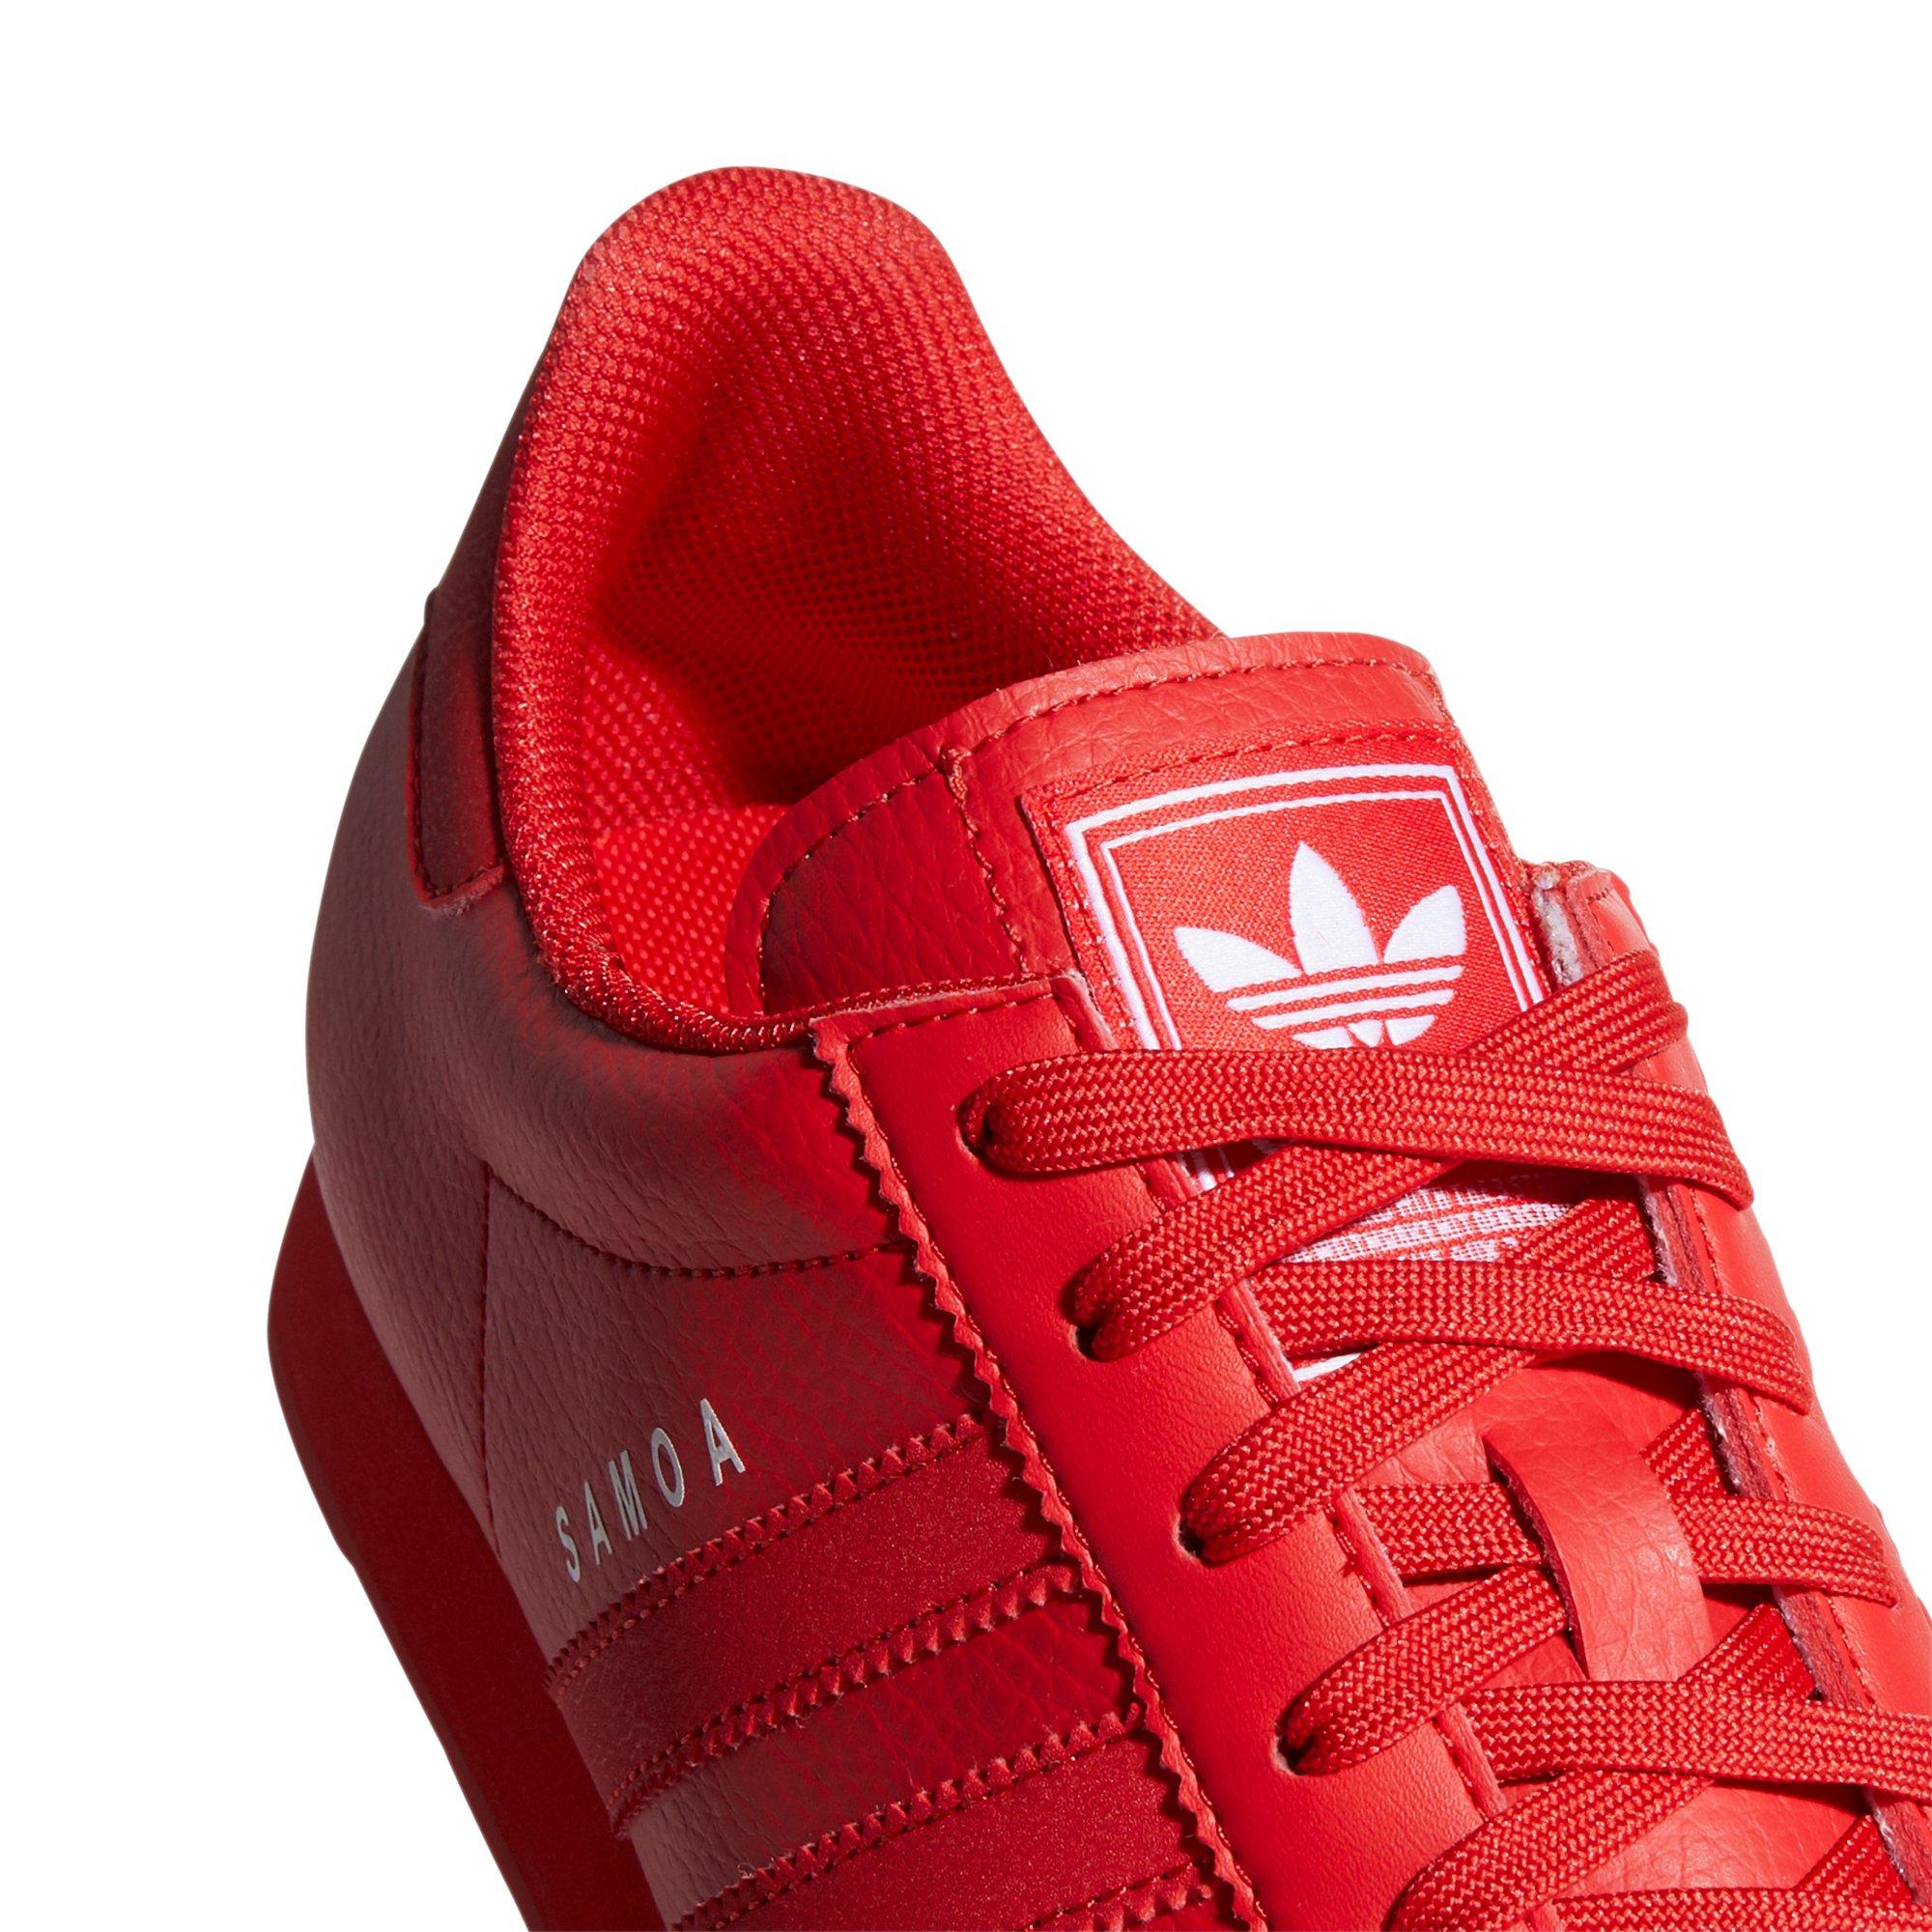 adidas mono samoa red men's shoe